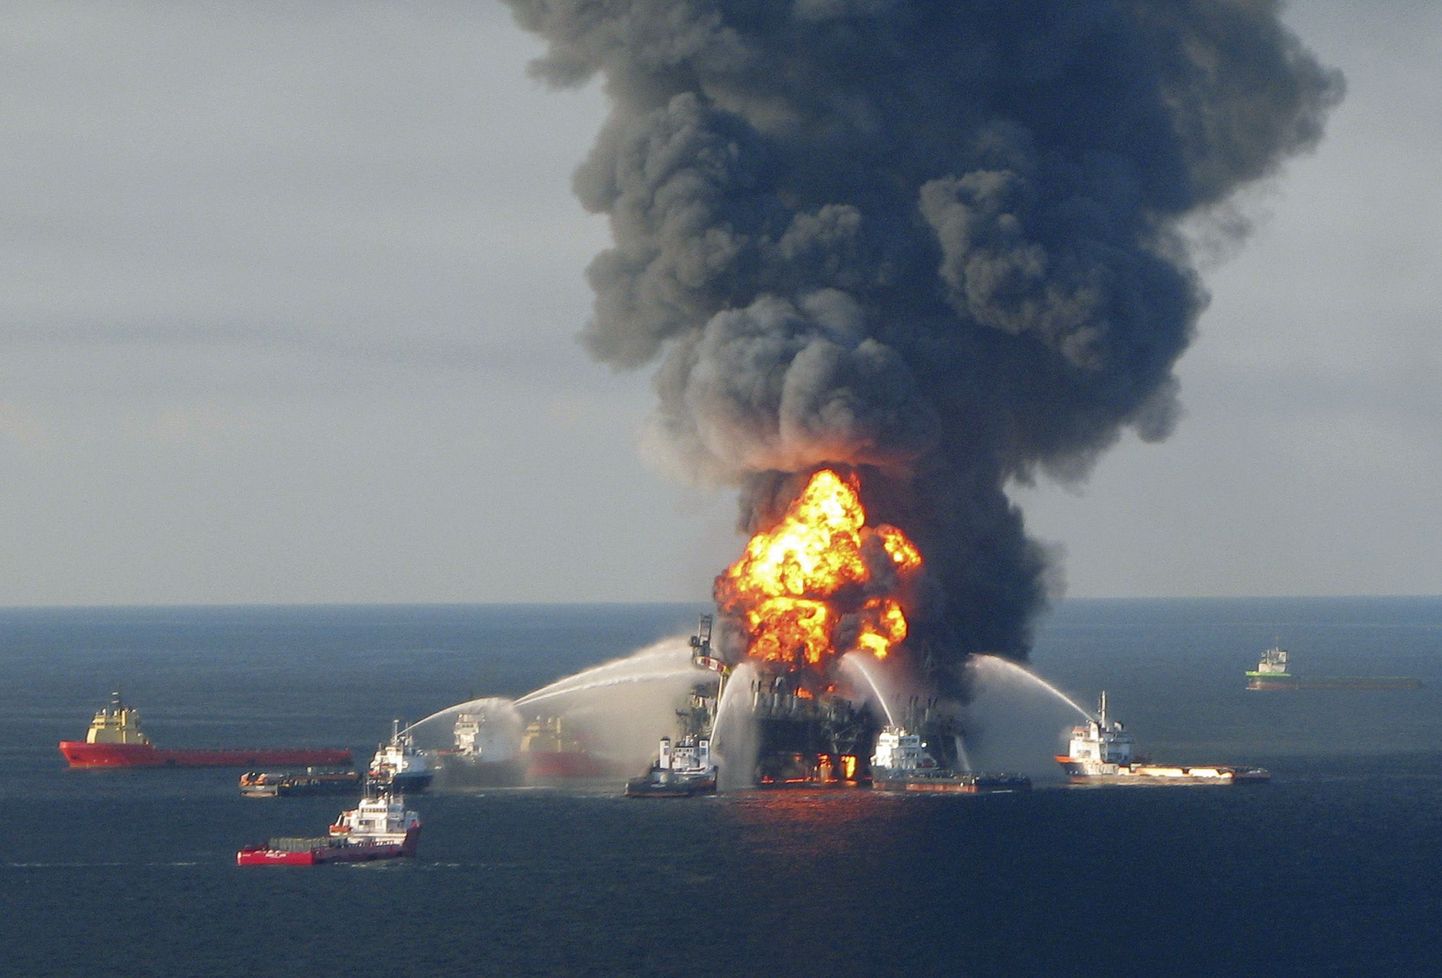 Взрыв на нефтяной платформе Deepwater Horizon послужил причиной крупнейшей экологической катастрофы в регионе.